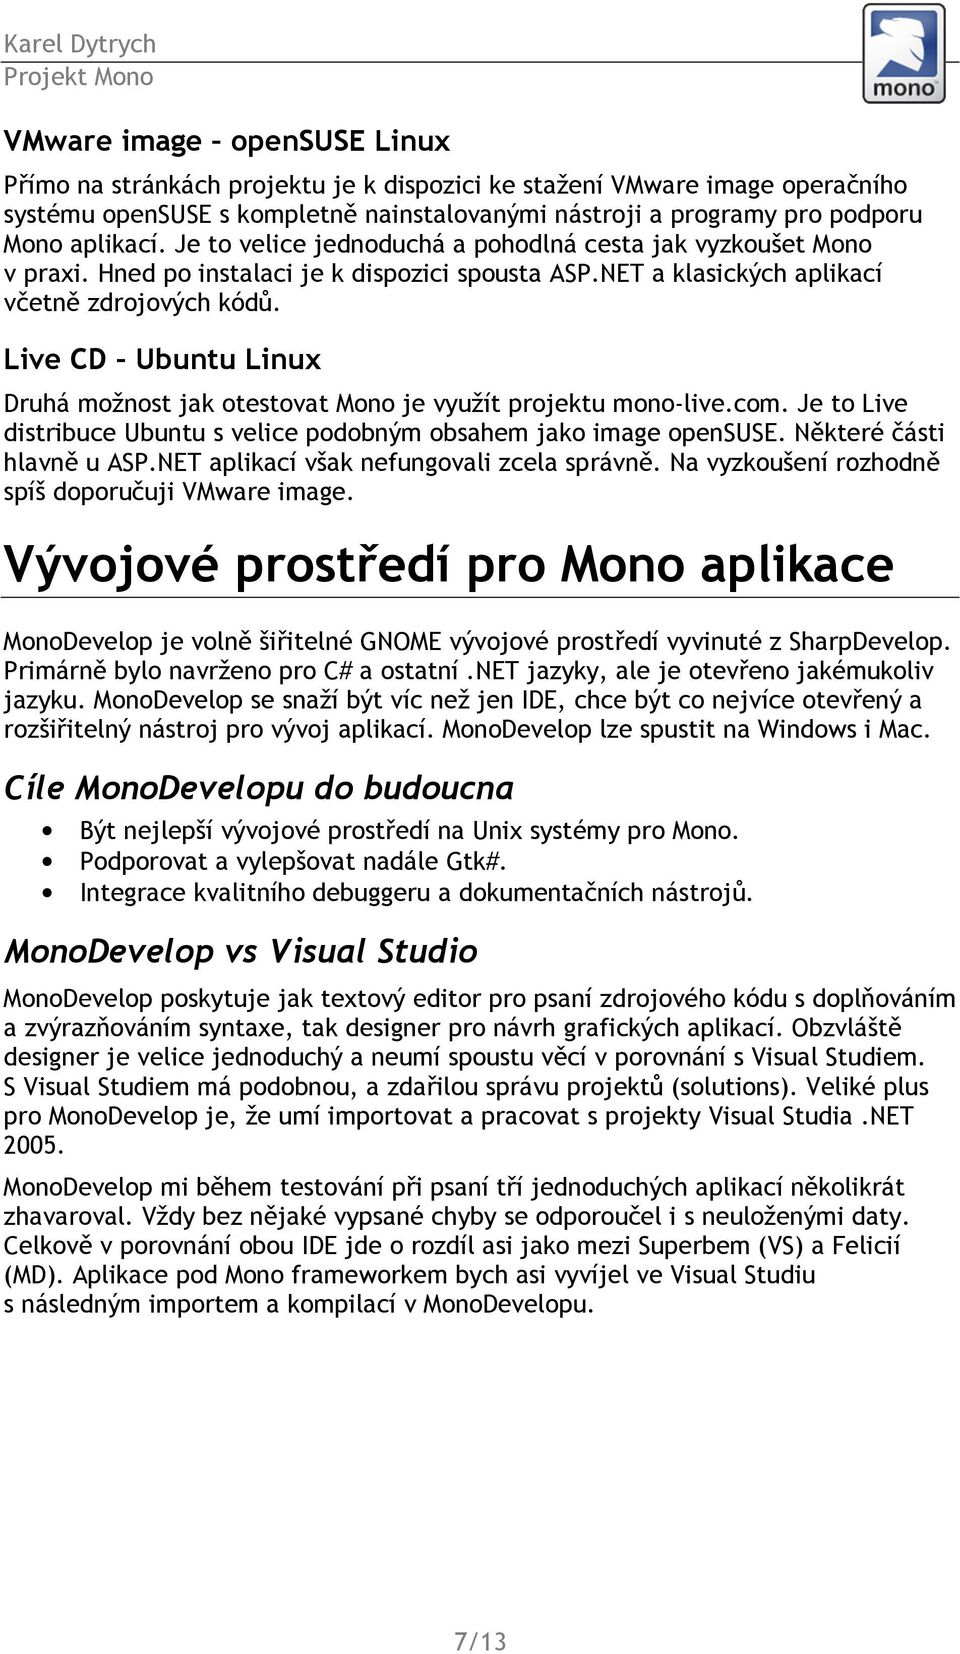 Live CD Ubuntu Linux Druhá možnost jak otestovat Mono je využít projektu mono-live.com. Je to Live distribuce Ubuntu s velice podobným obsahem jako image opensuse. Některé části hlavně u ASP.